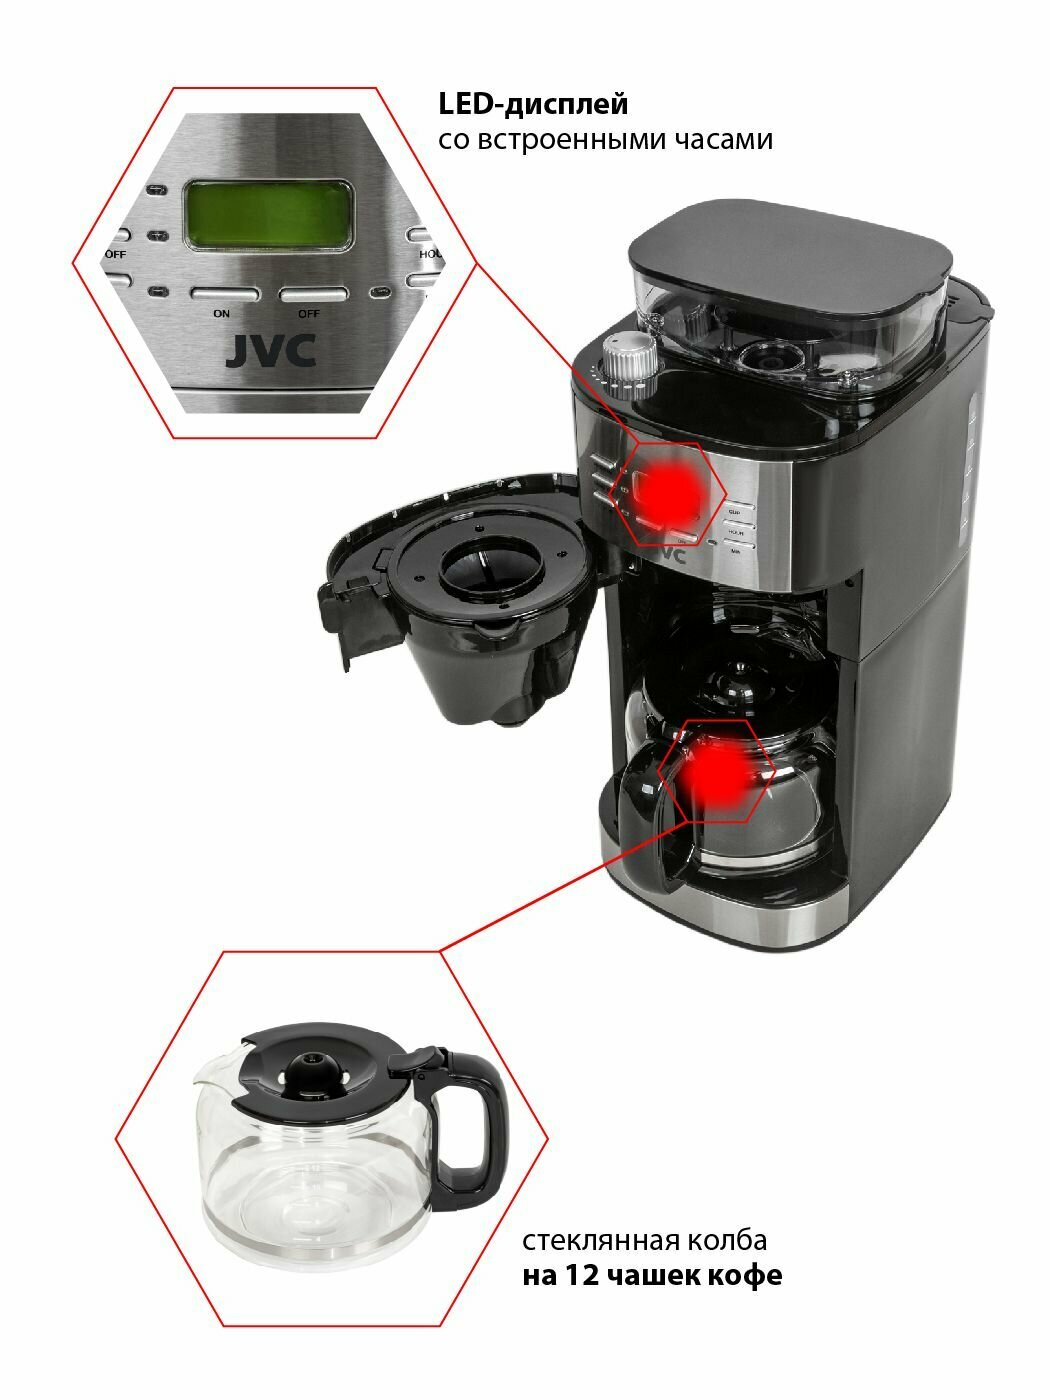 Кофеварка капельная JVC JK-CF31 со встроенной кофемолкой, 8 уровней помола, 3 уровня крепости кофе, отложенный старт 24 часа, поддержание тепла, 1050 Вт